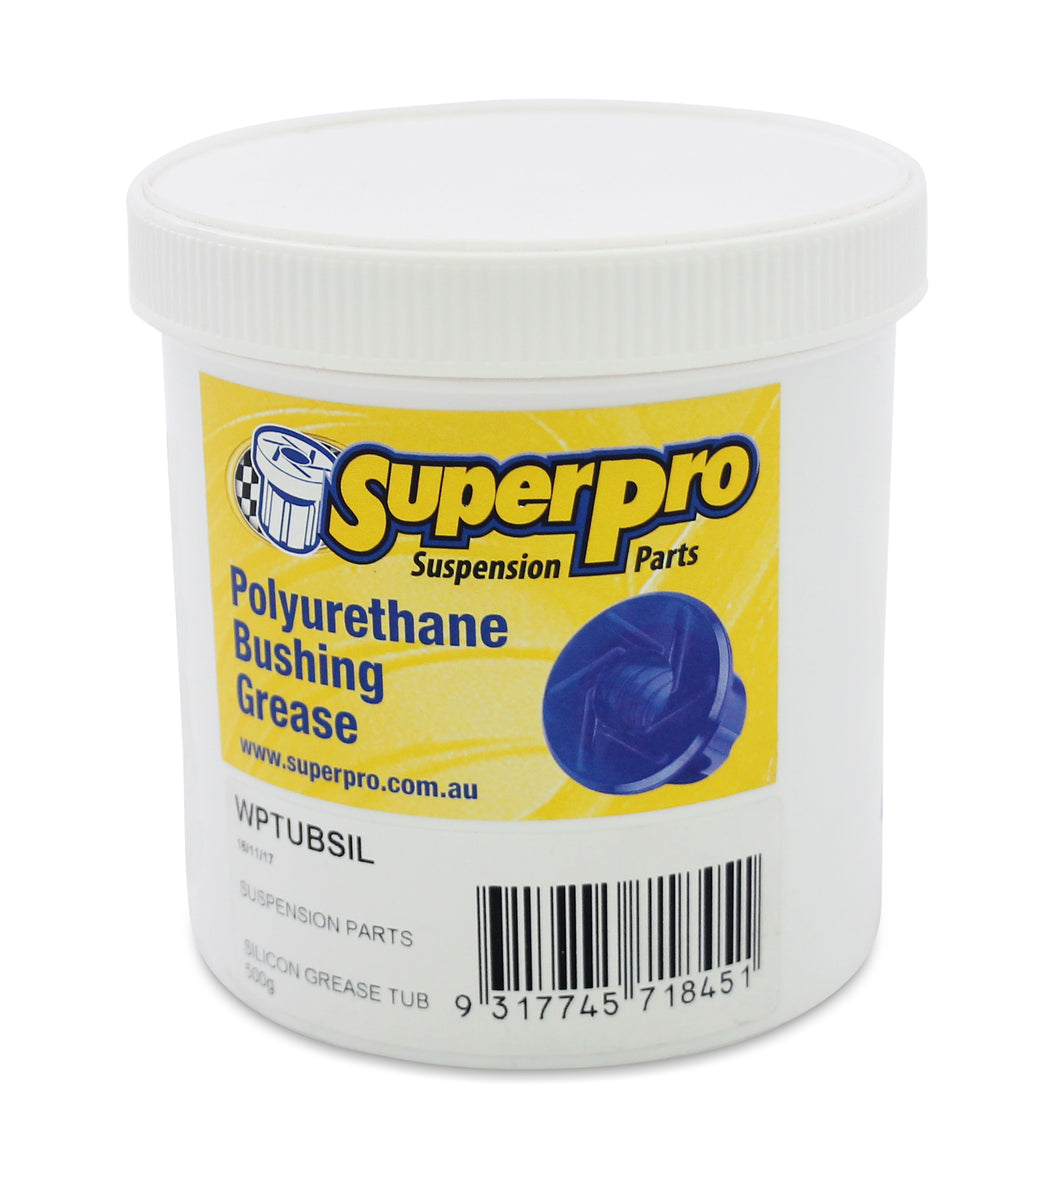 SuperPro Bushing Grease - 500g Tub